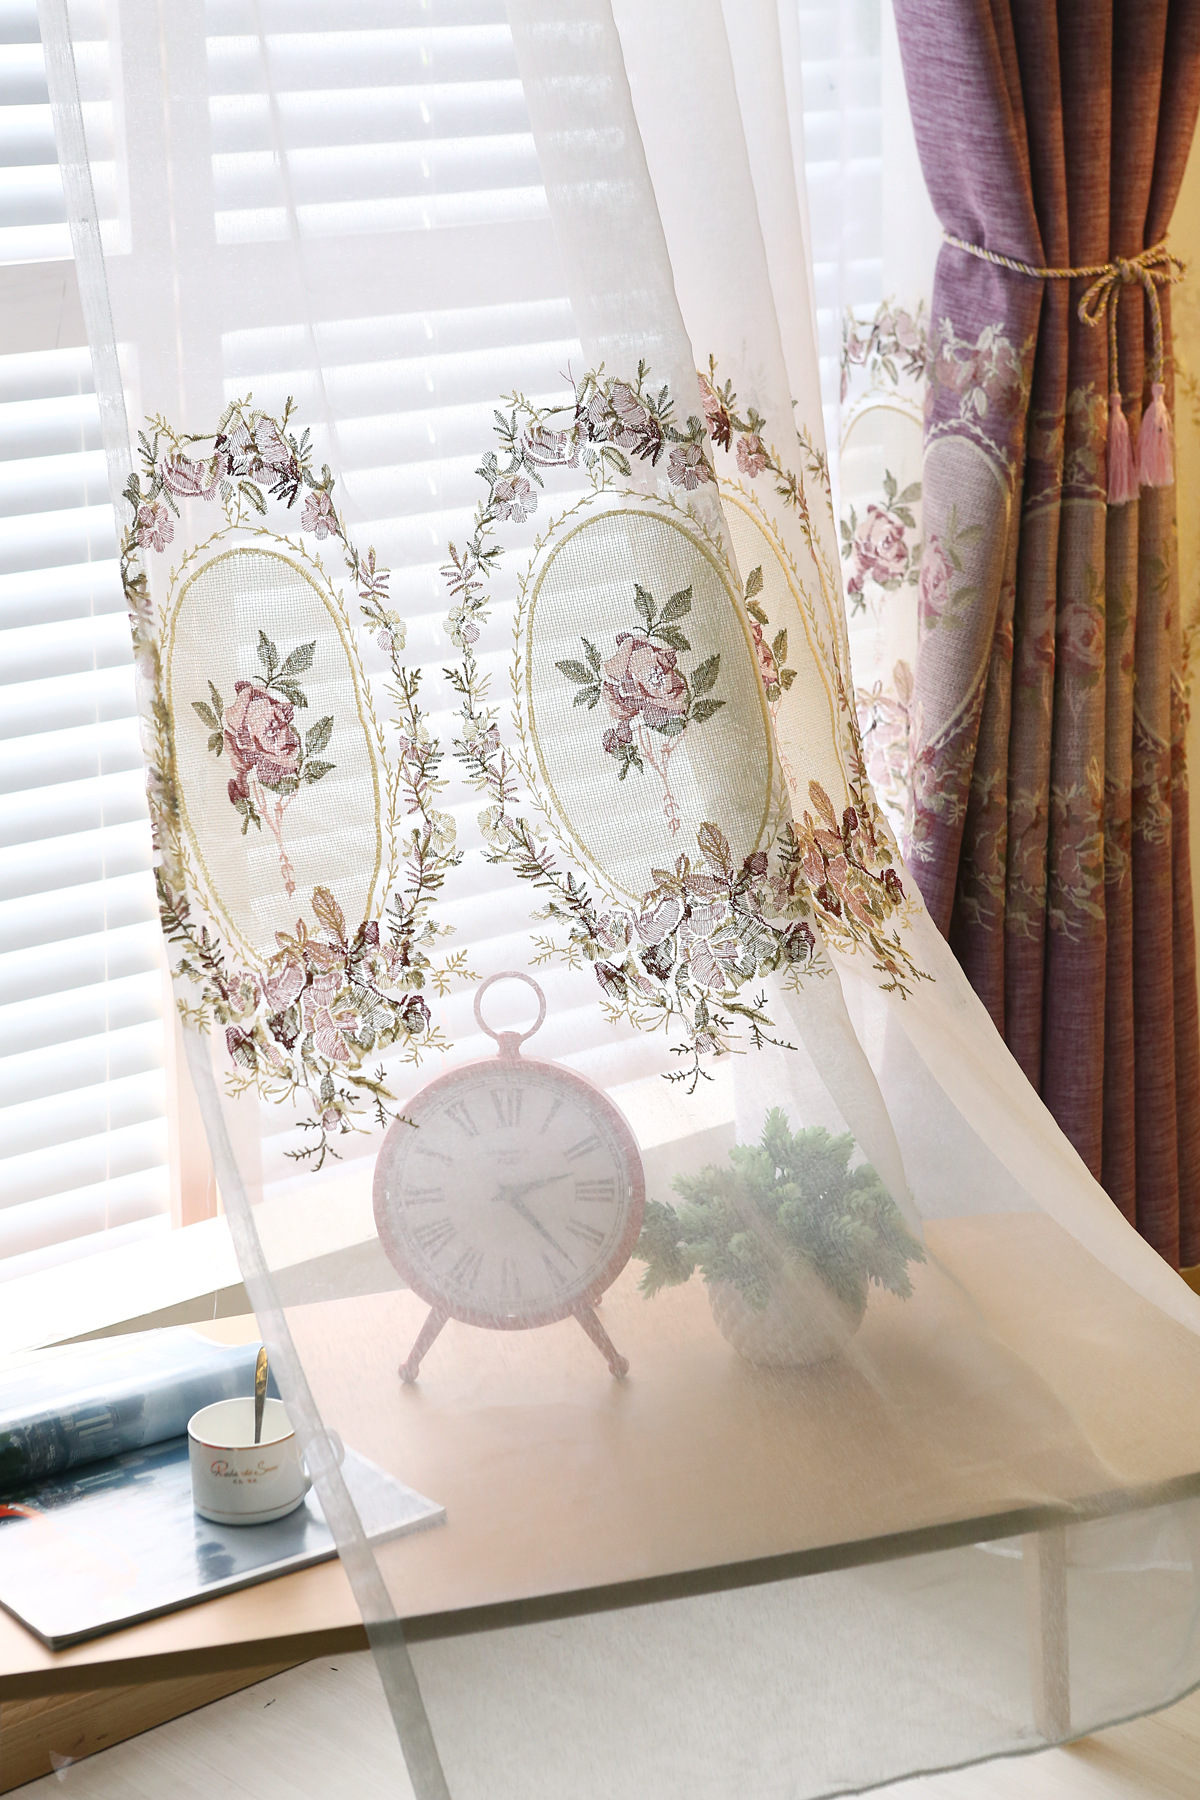 和润软装 法式高端丝绒布刺绣客厅窗帘_设计素材库免费下载-美间设计